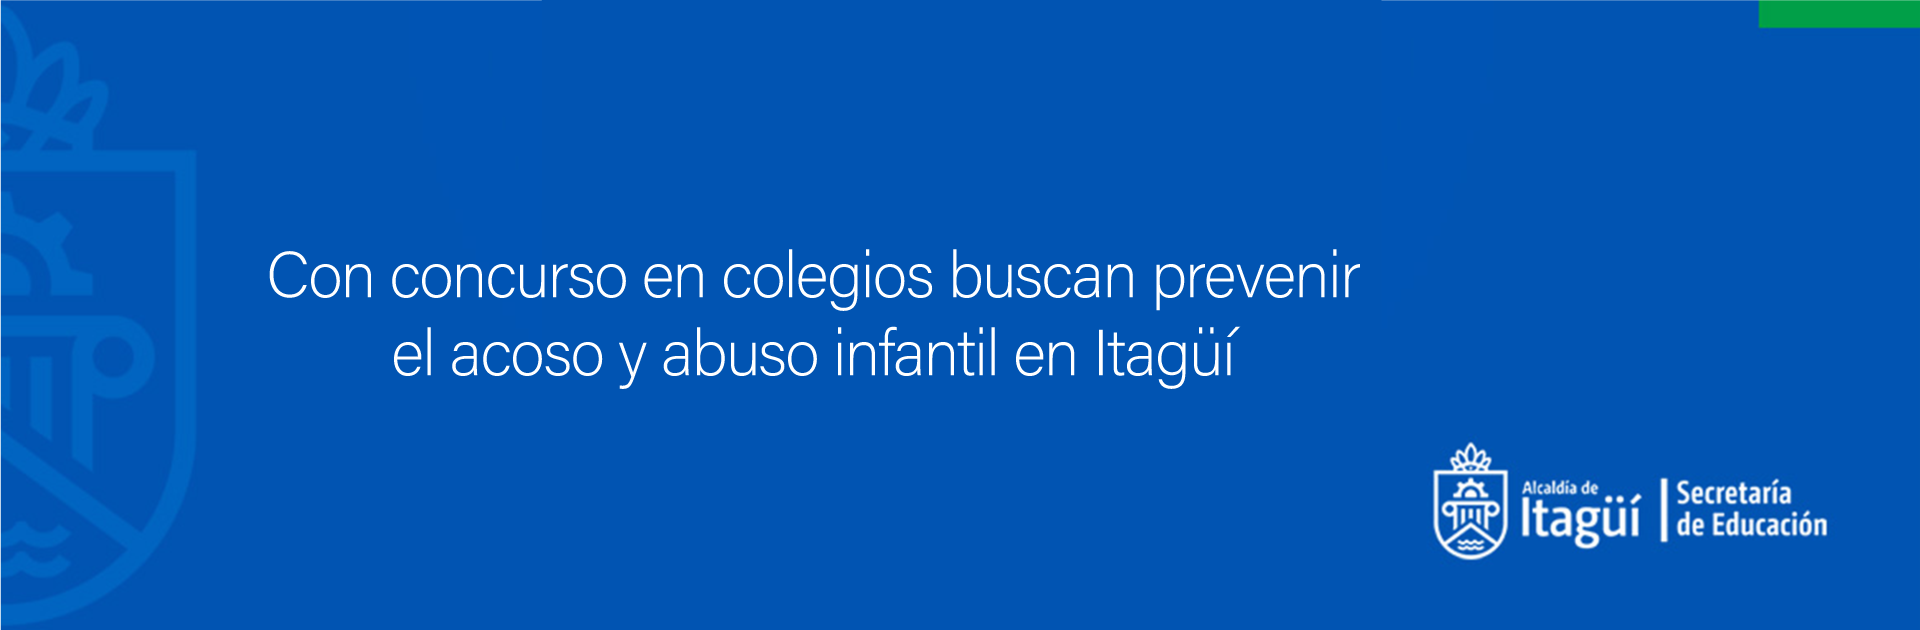 Con concurso en colegios buscan prevenir el acoso y abuso infantil en Itagüí